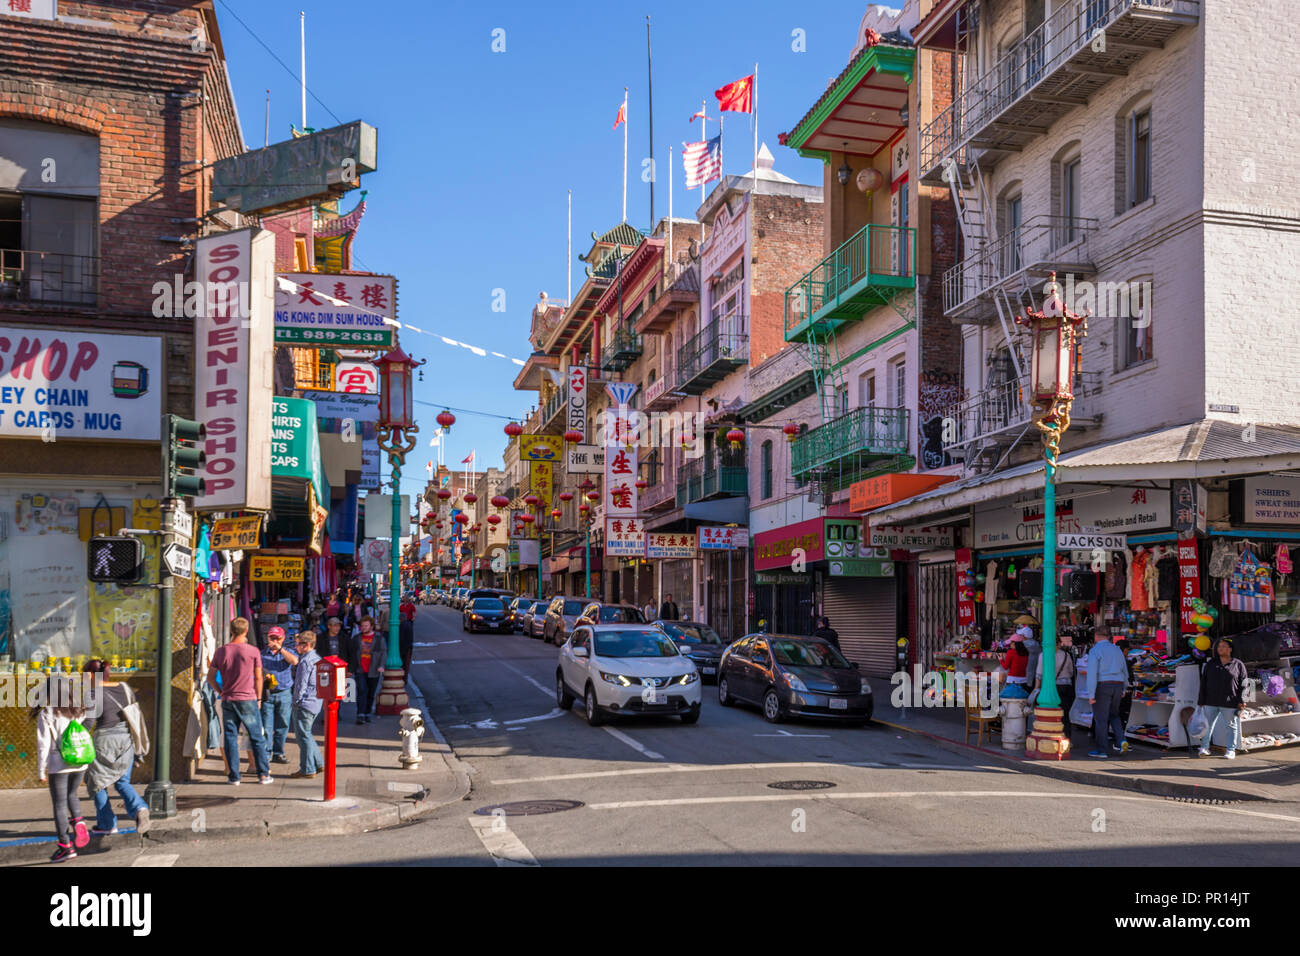 Vue sur rue animée dans le quartier chinois, San Francisco, Californie, États-Unis d'Amérique, Amérique du Nord Banque D'Images